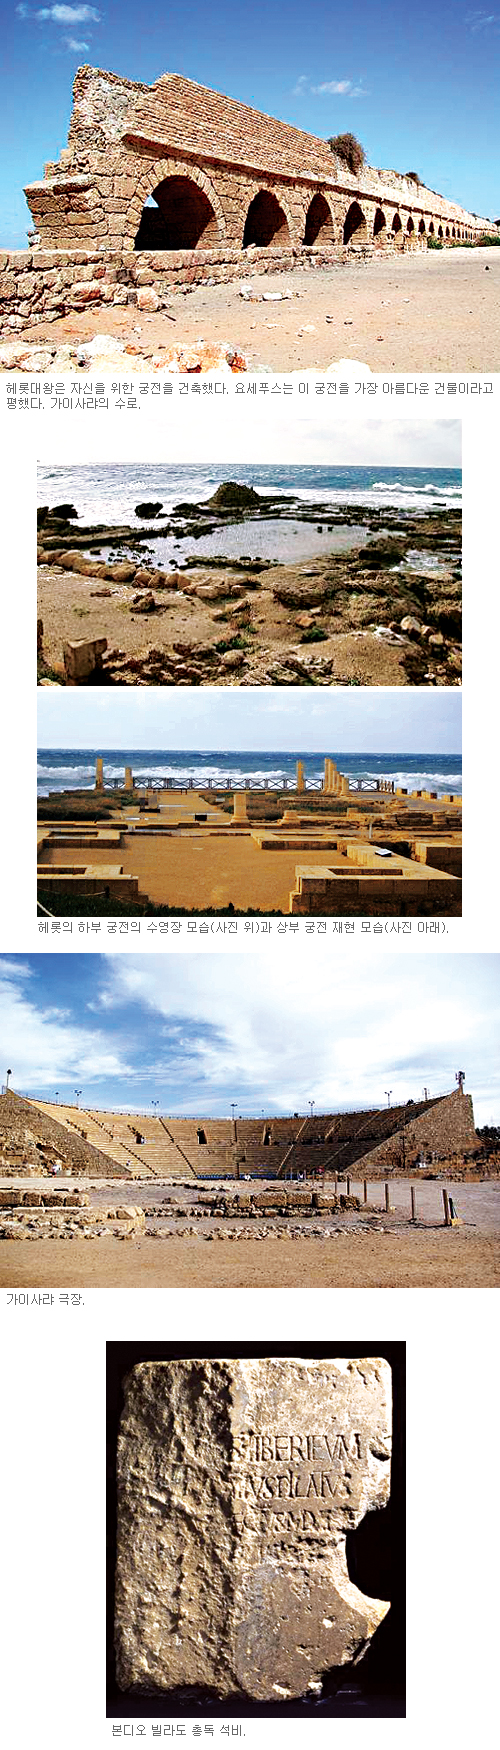 [고고학으로 읽는 성서-(1) 가나안 땅의 사람들] 항구도시 욥바와 가이사랴 (3) 기사의 사진